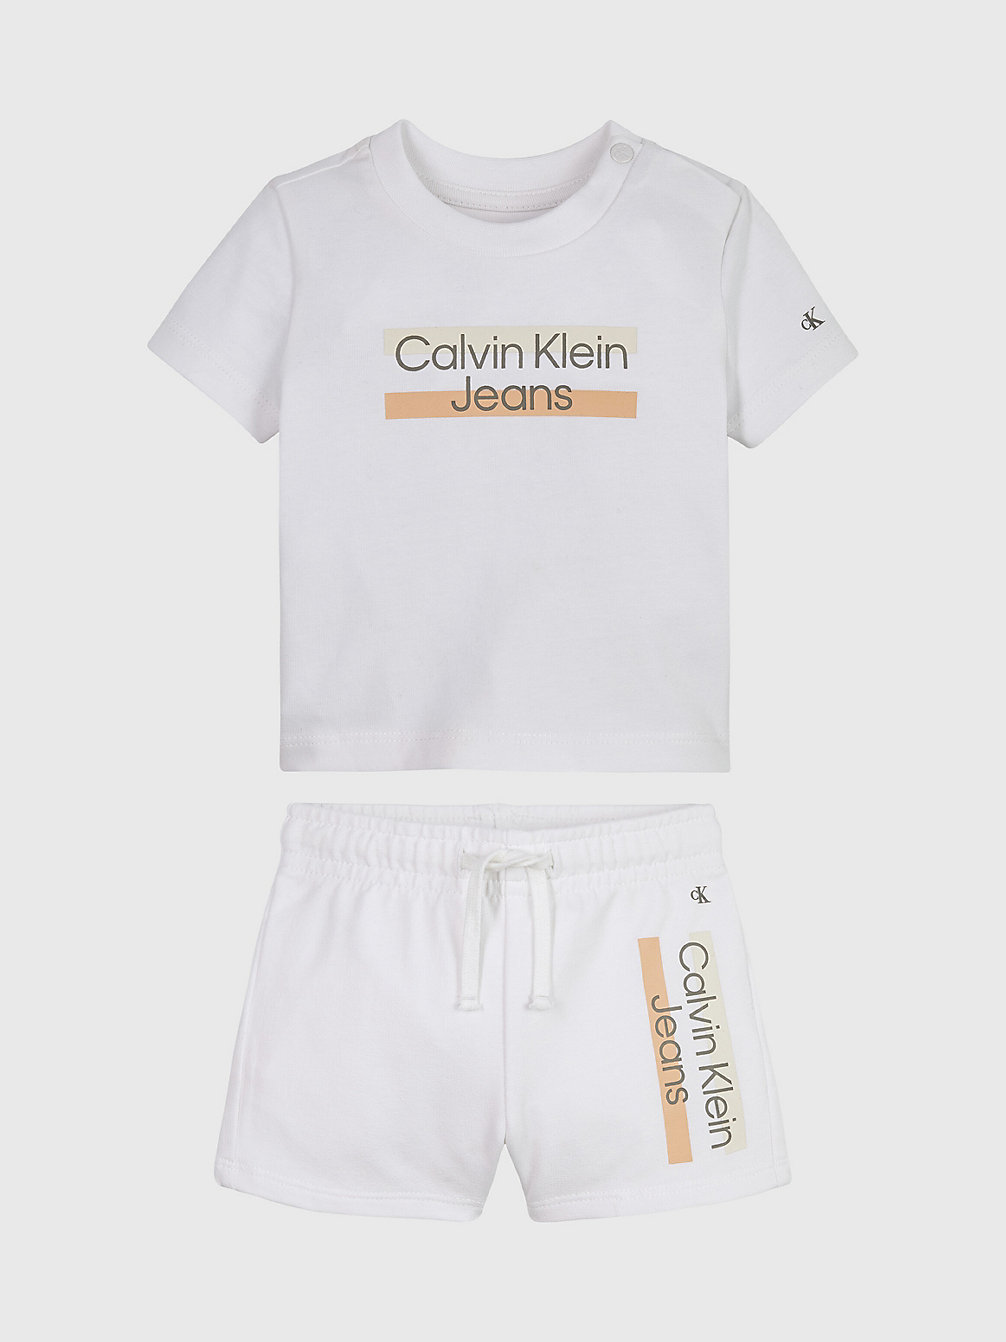 Conjunto De Camiseta Y Shorts Para Recién Nacido > BRIGHT WHITE > undefined newborn > Calvin Klein